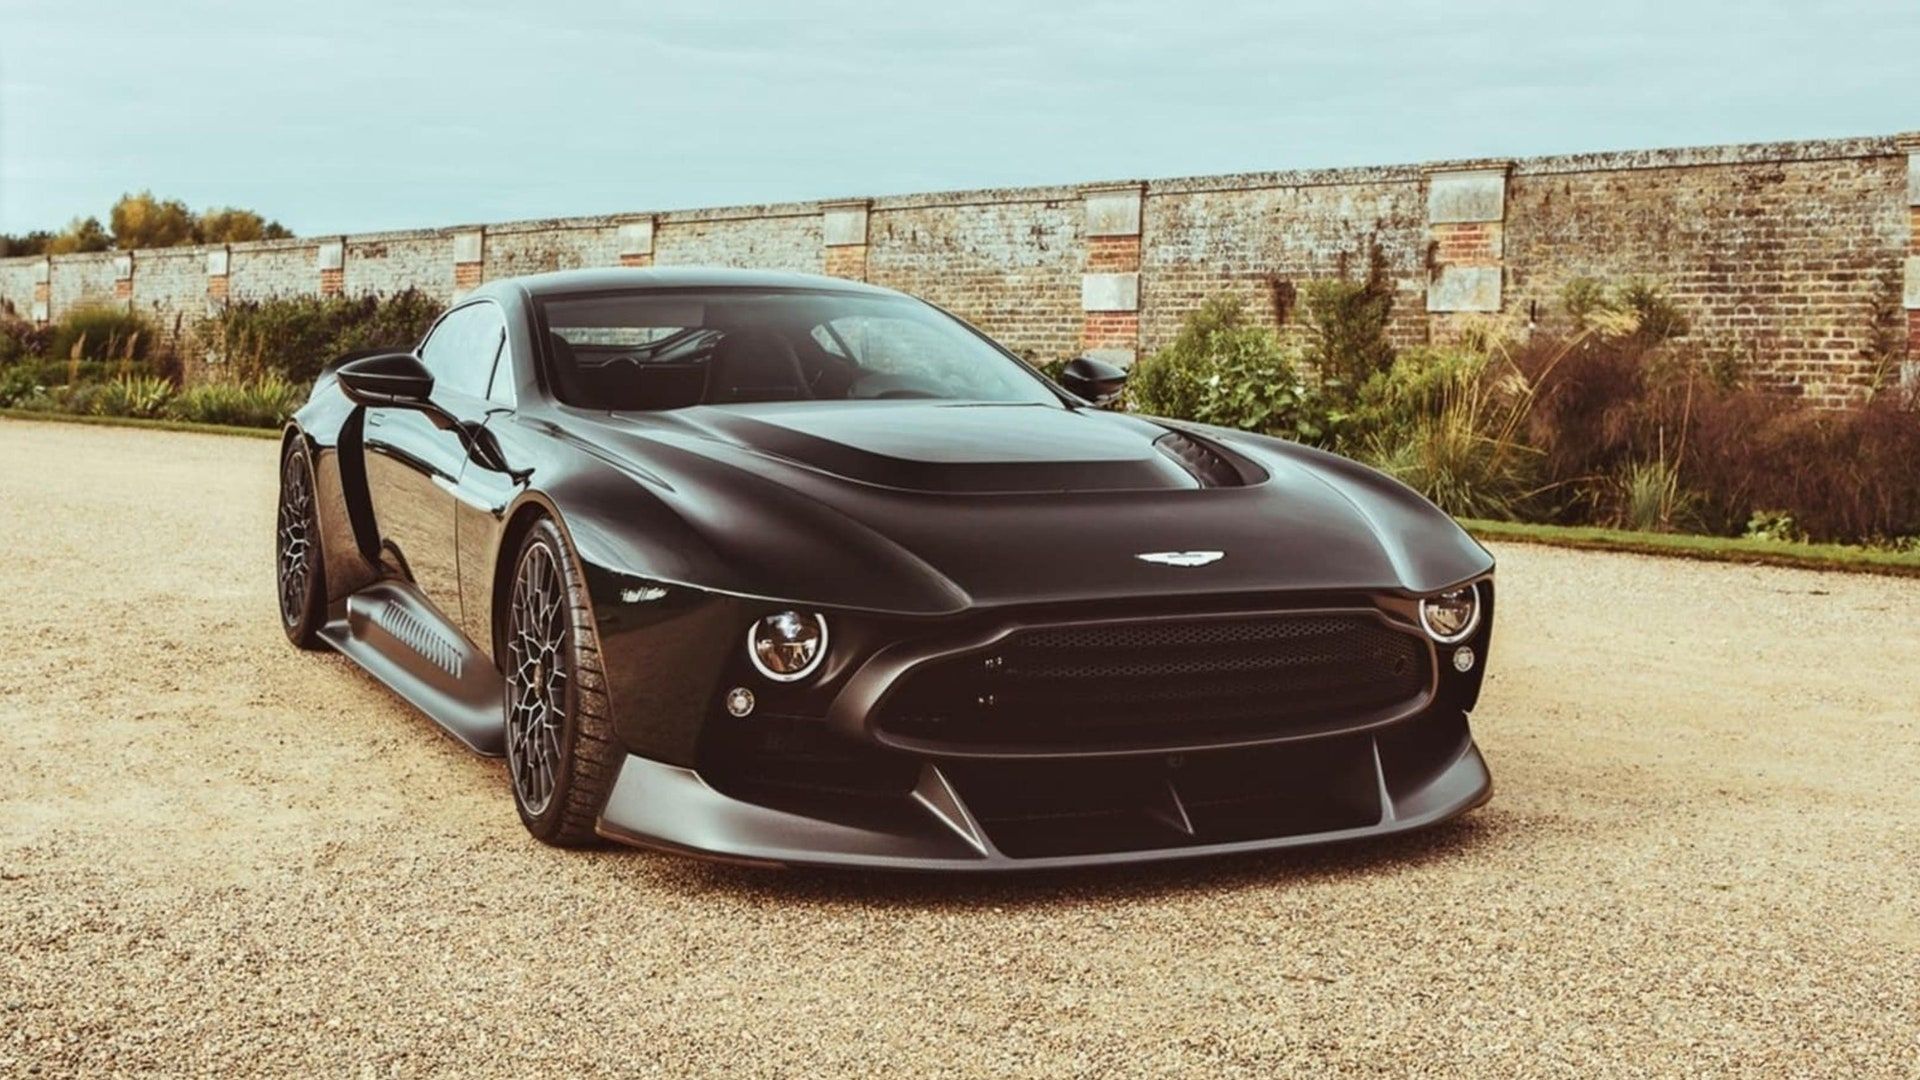 The Aston Martin Victor is unique